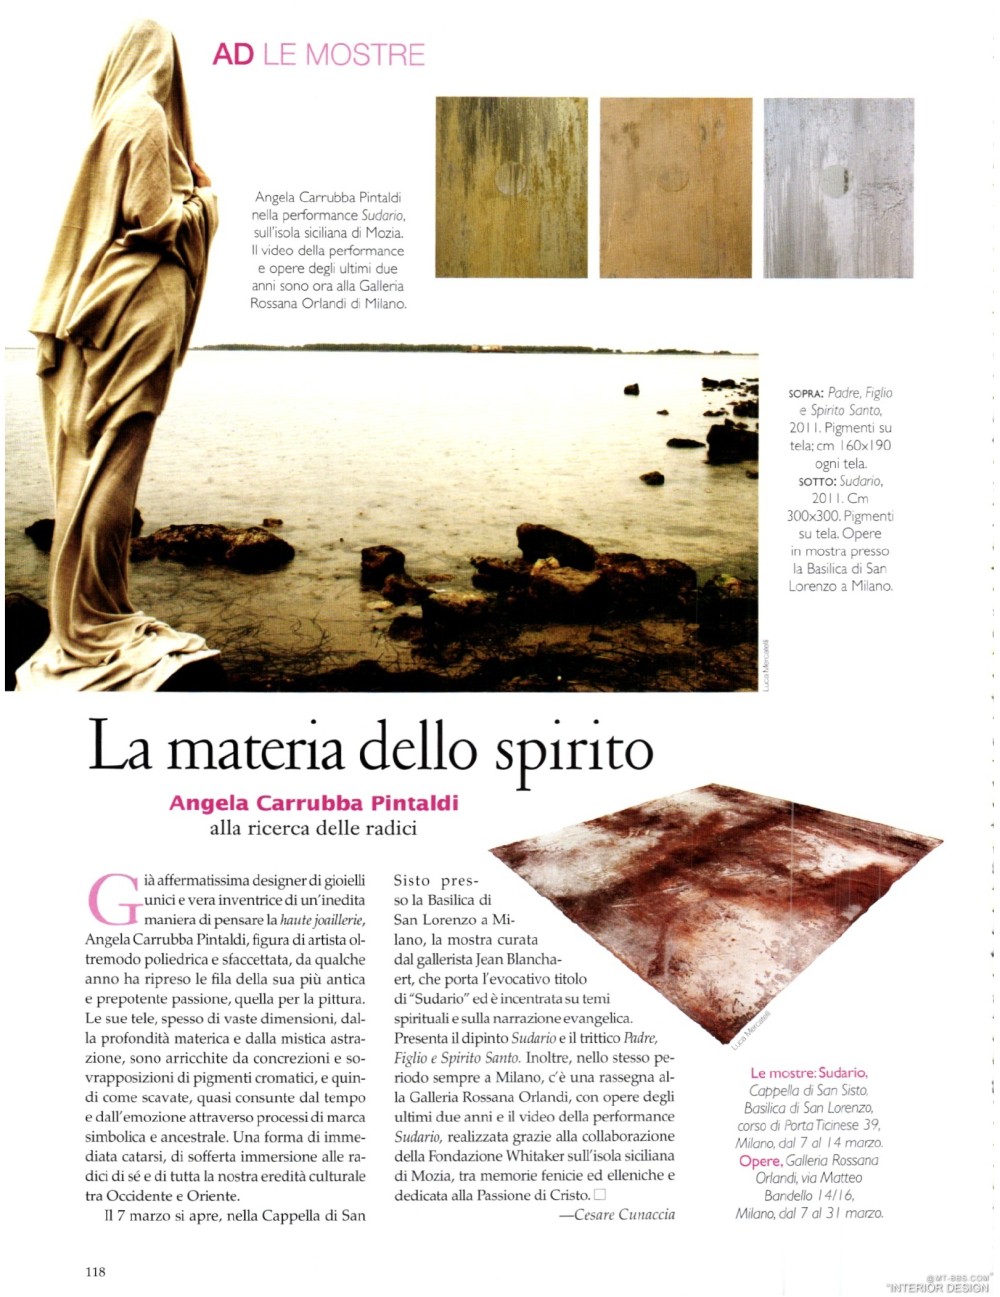 意大利AD 杂志 2012年全年JPG高清版本 全免（上传完毕）_0120.jpg